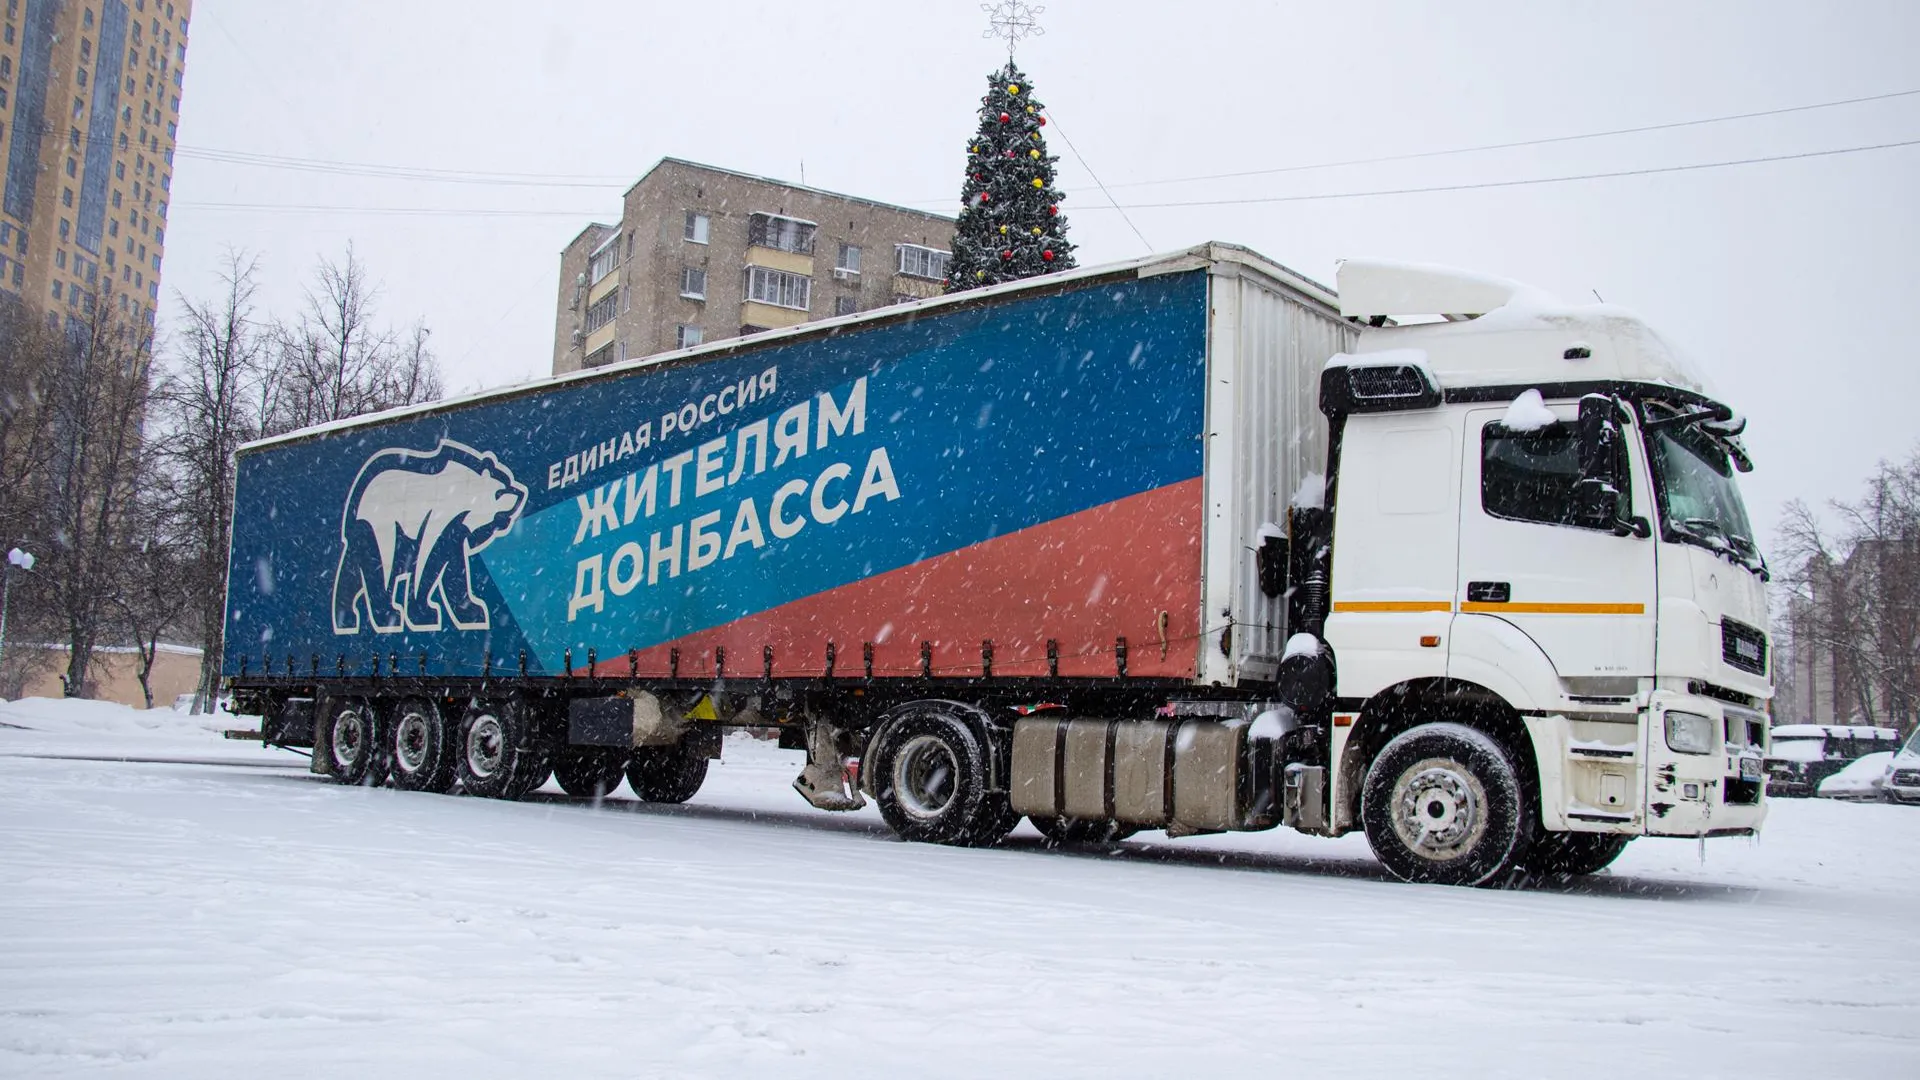 «Единая Россия» отправила гуманитарную помощь жителям Донбасса